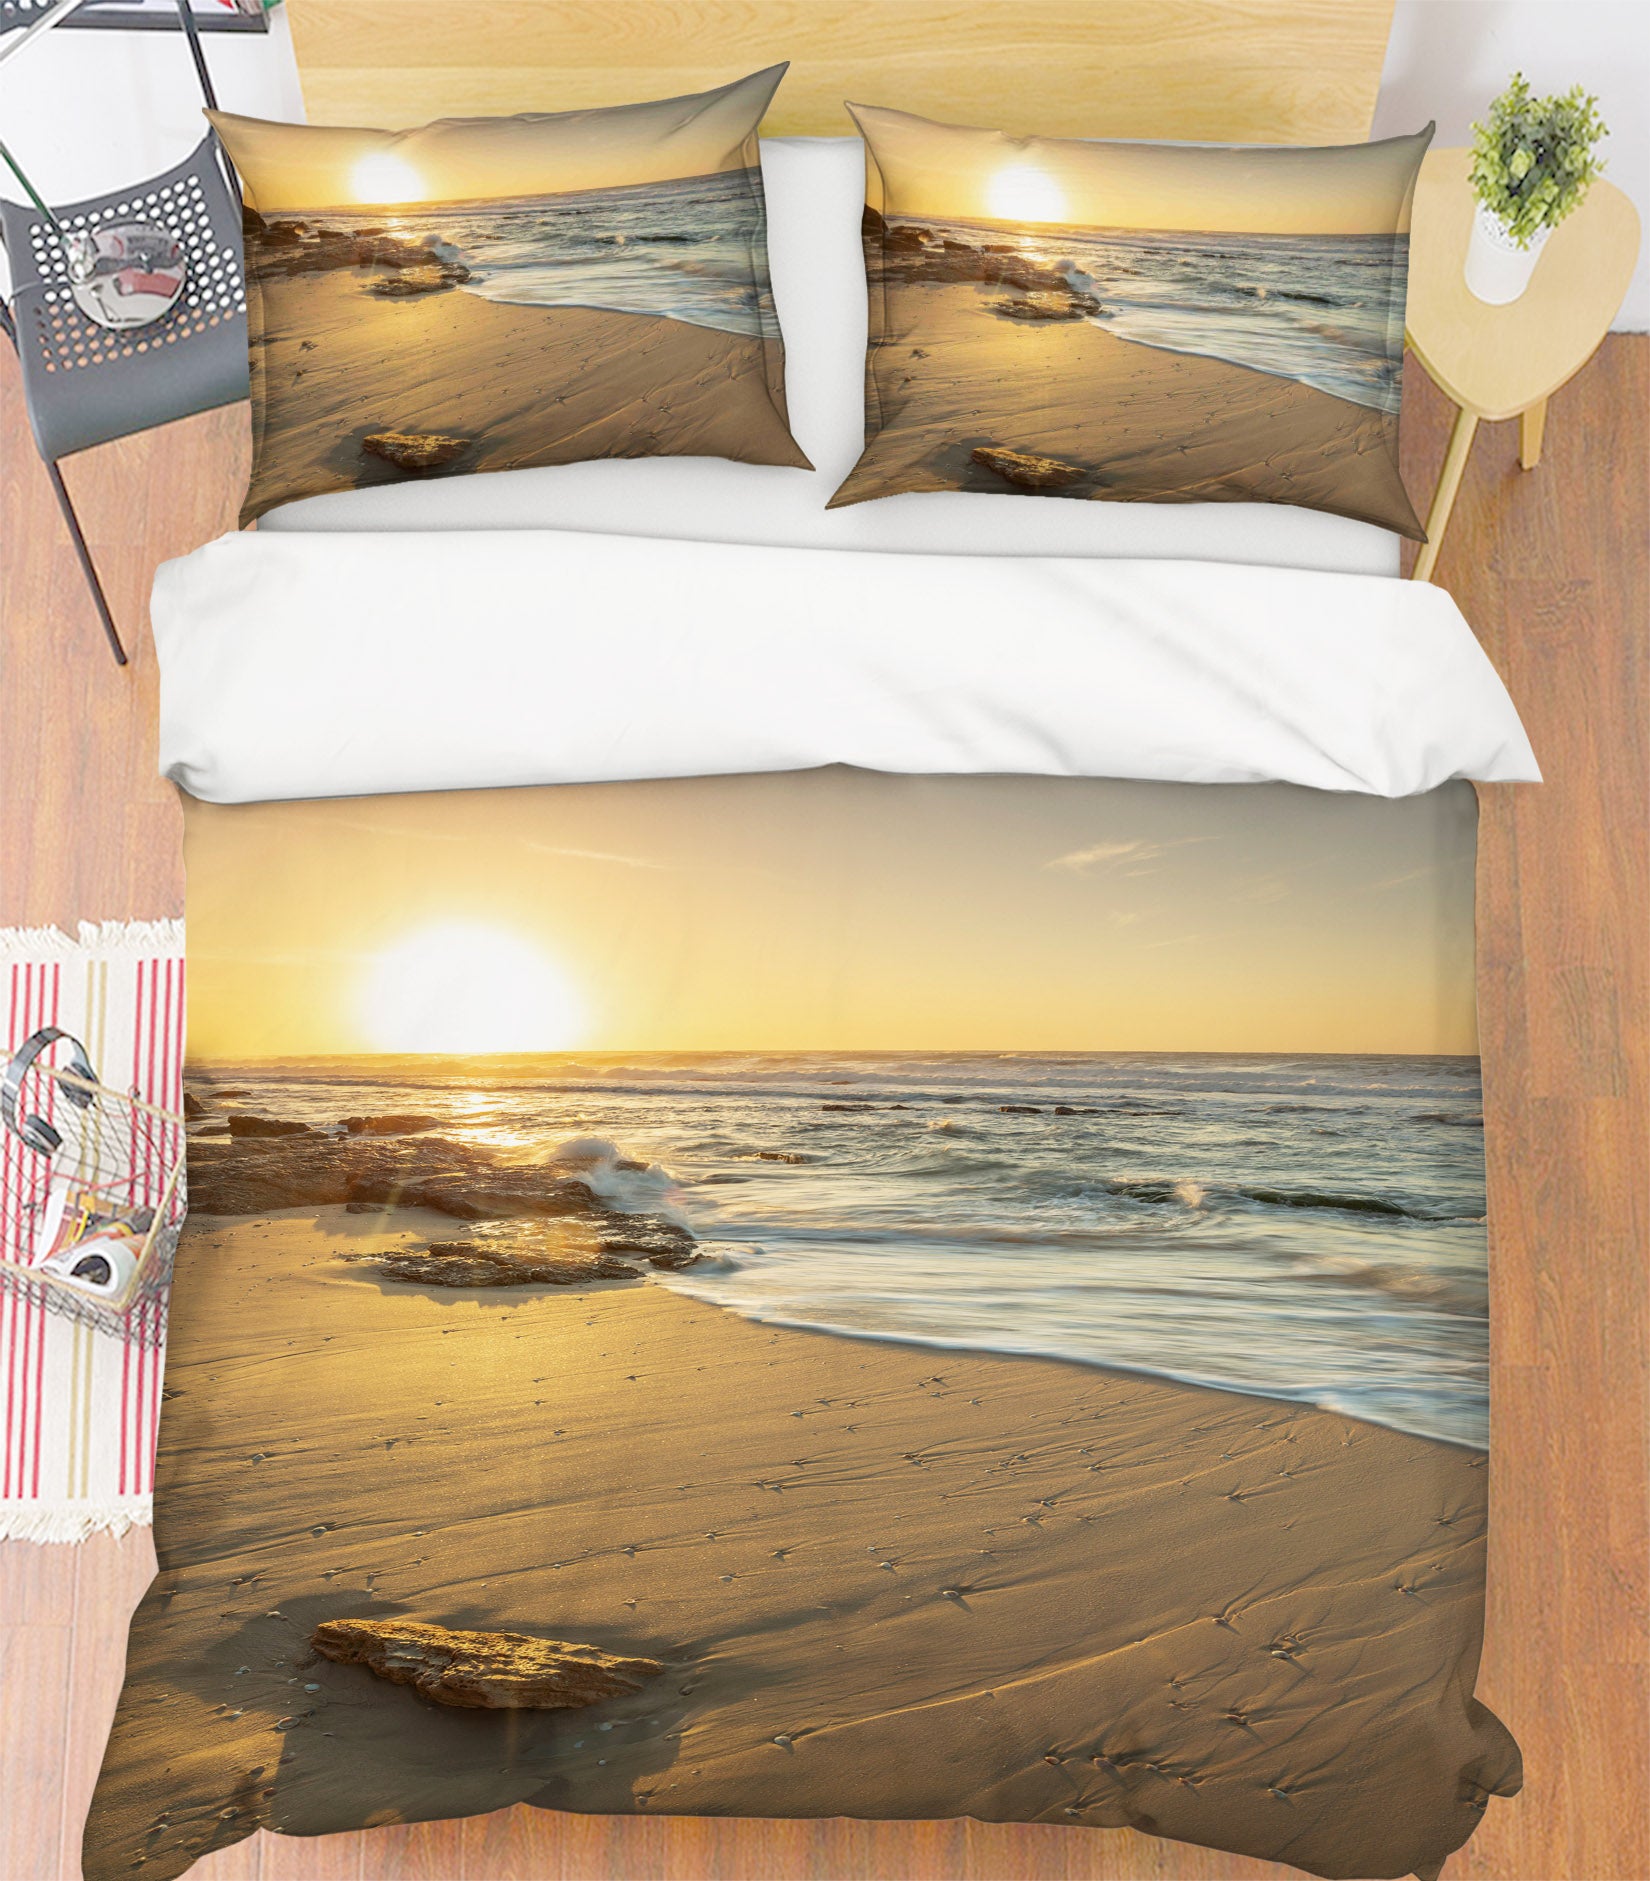 3D Beach 85121 Assaf Frank Bedding Bed Pillowcases Quilt